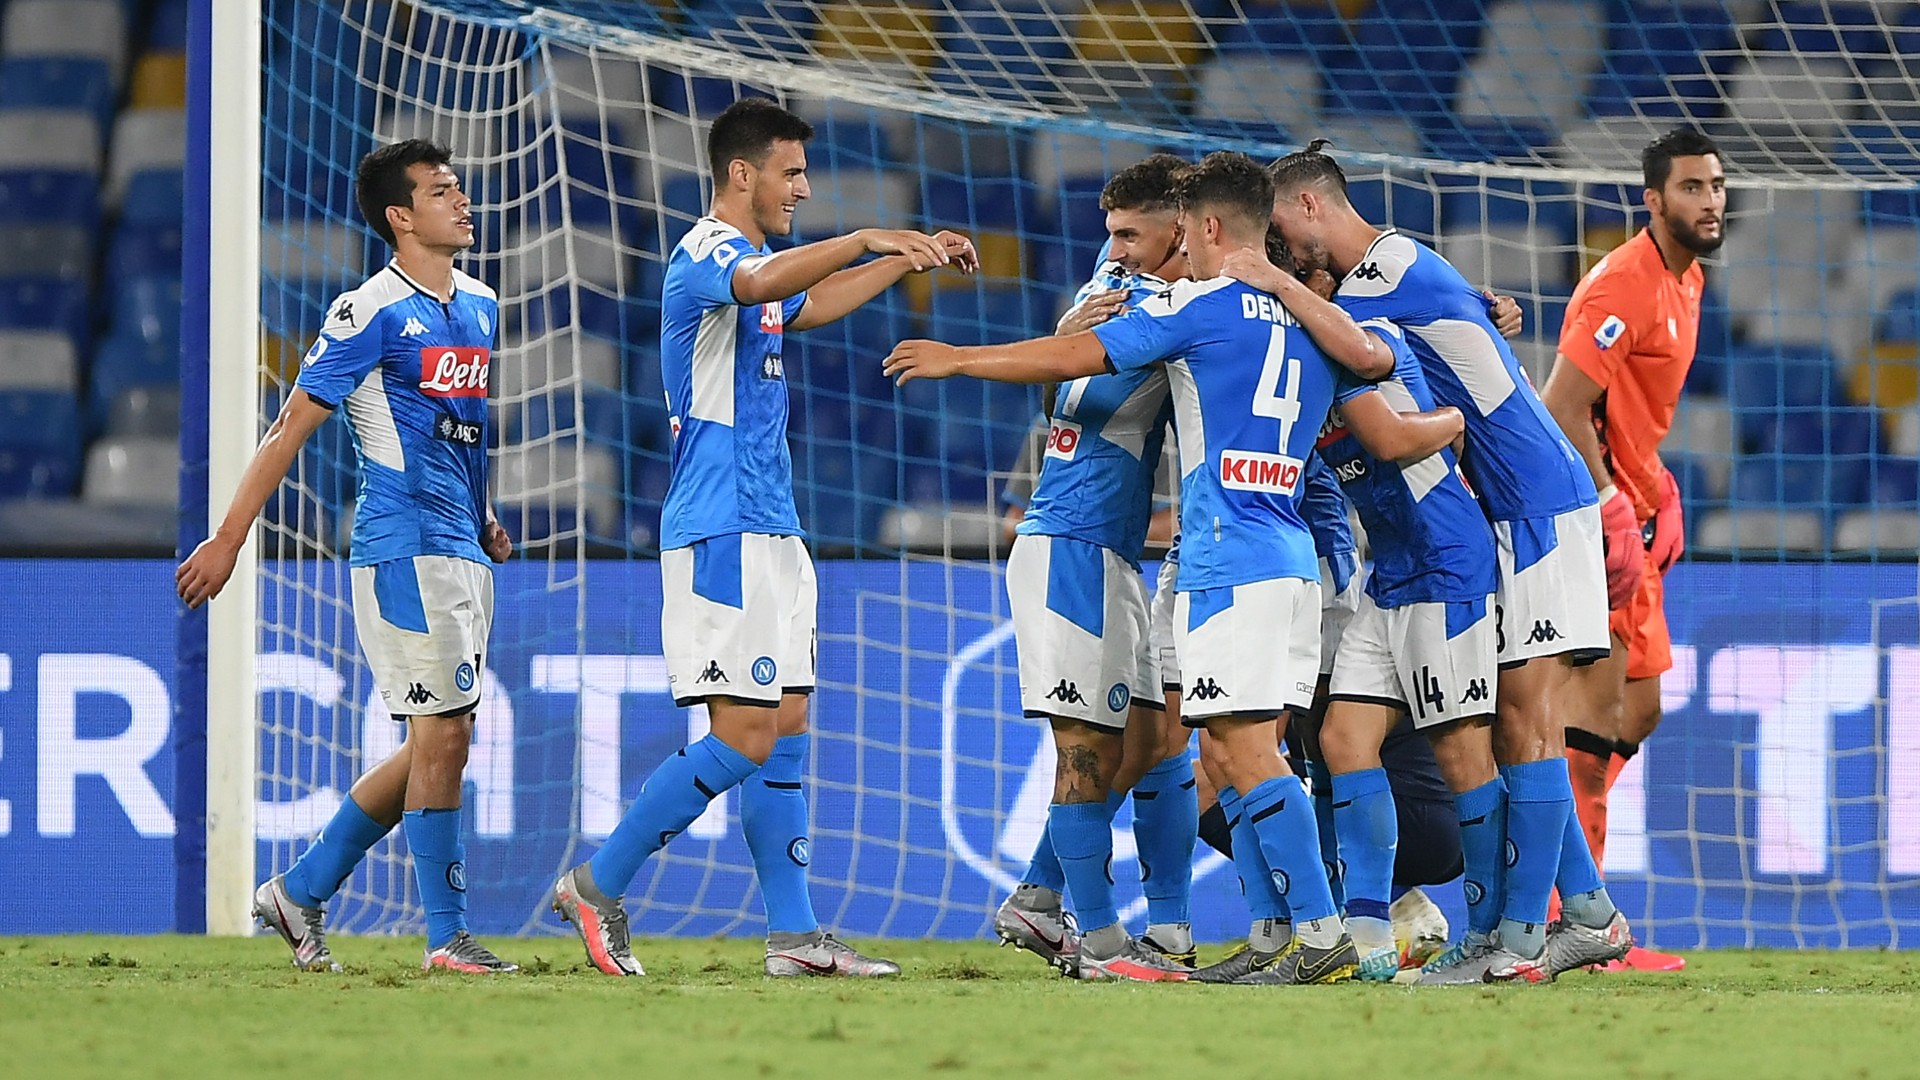 Le foto di Napoli-Lazio 3-1